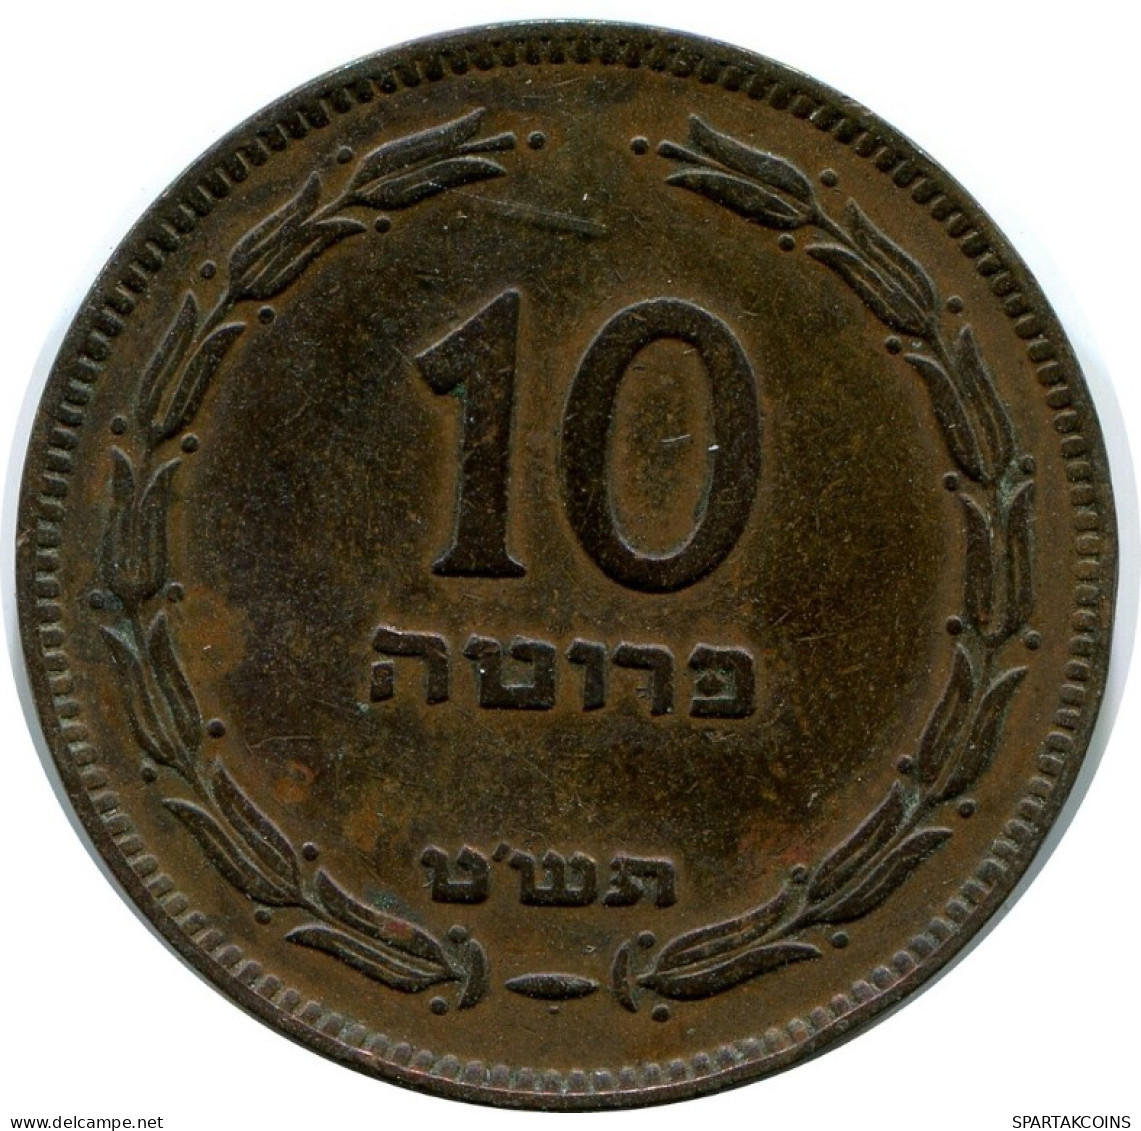 10 PRUTA 1949 ISRAEL Coin #AH866.U.A - Israel